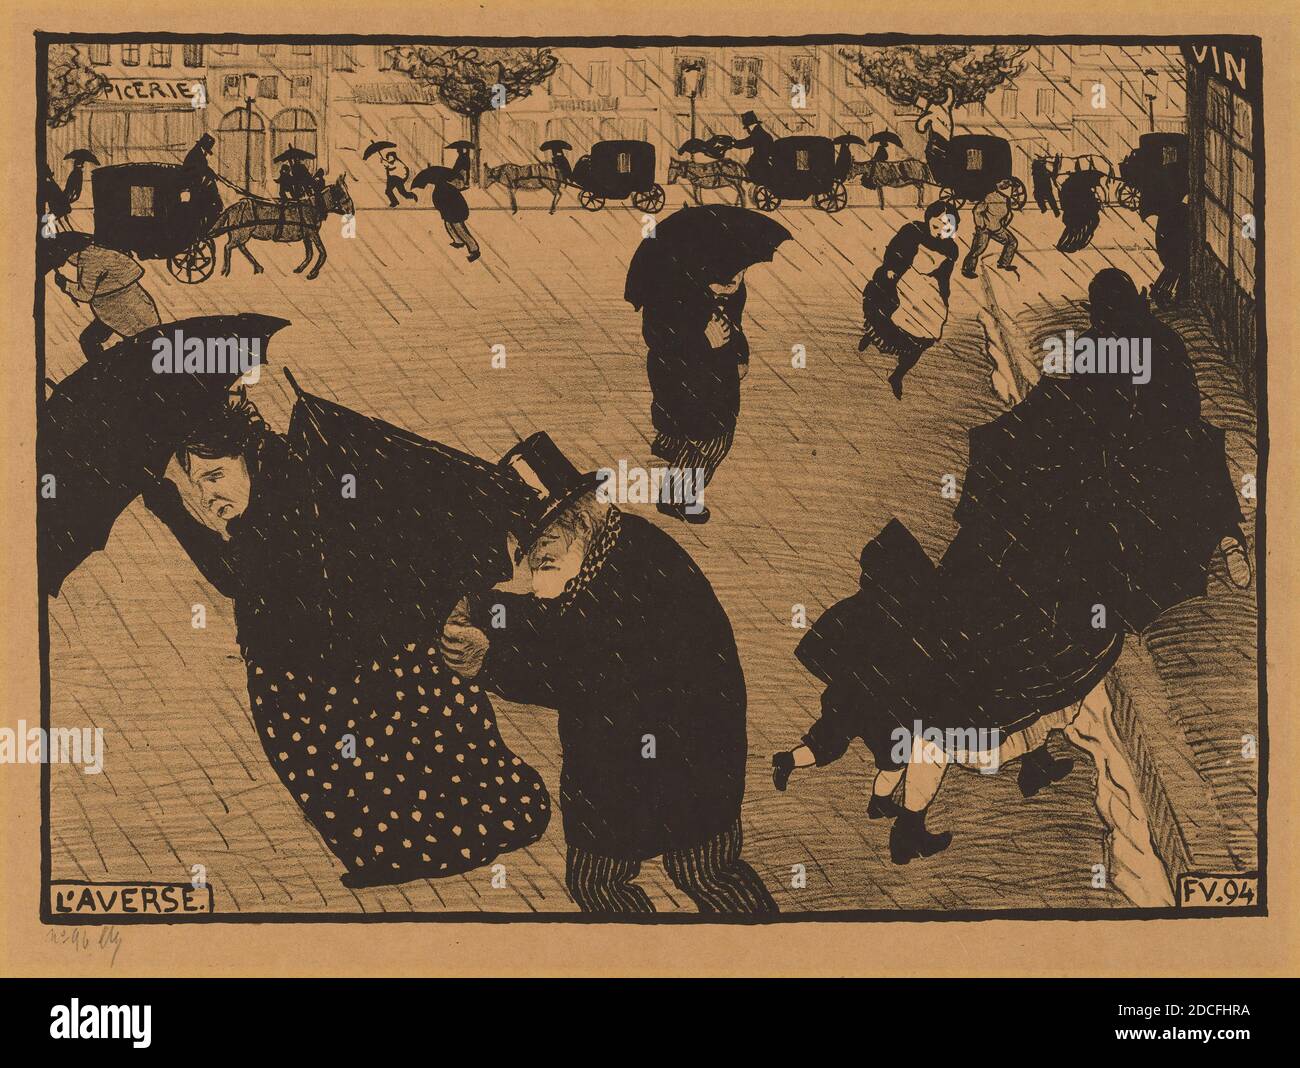 Félix Vallotton, (artiste), Suisse, 1865 - 1925, l'inverse (la douche), Paris intense, (série), 1894, lithographie (zinc) sur papier vélin jaune, total: 22.8 x 31.3 cm (9 x 12 5/16 po Banque D'Images